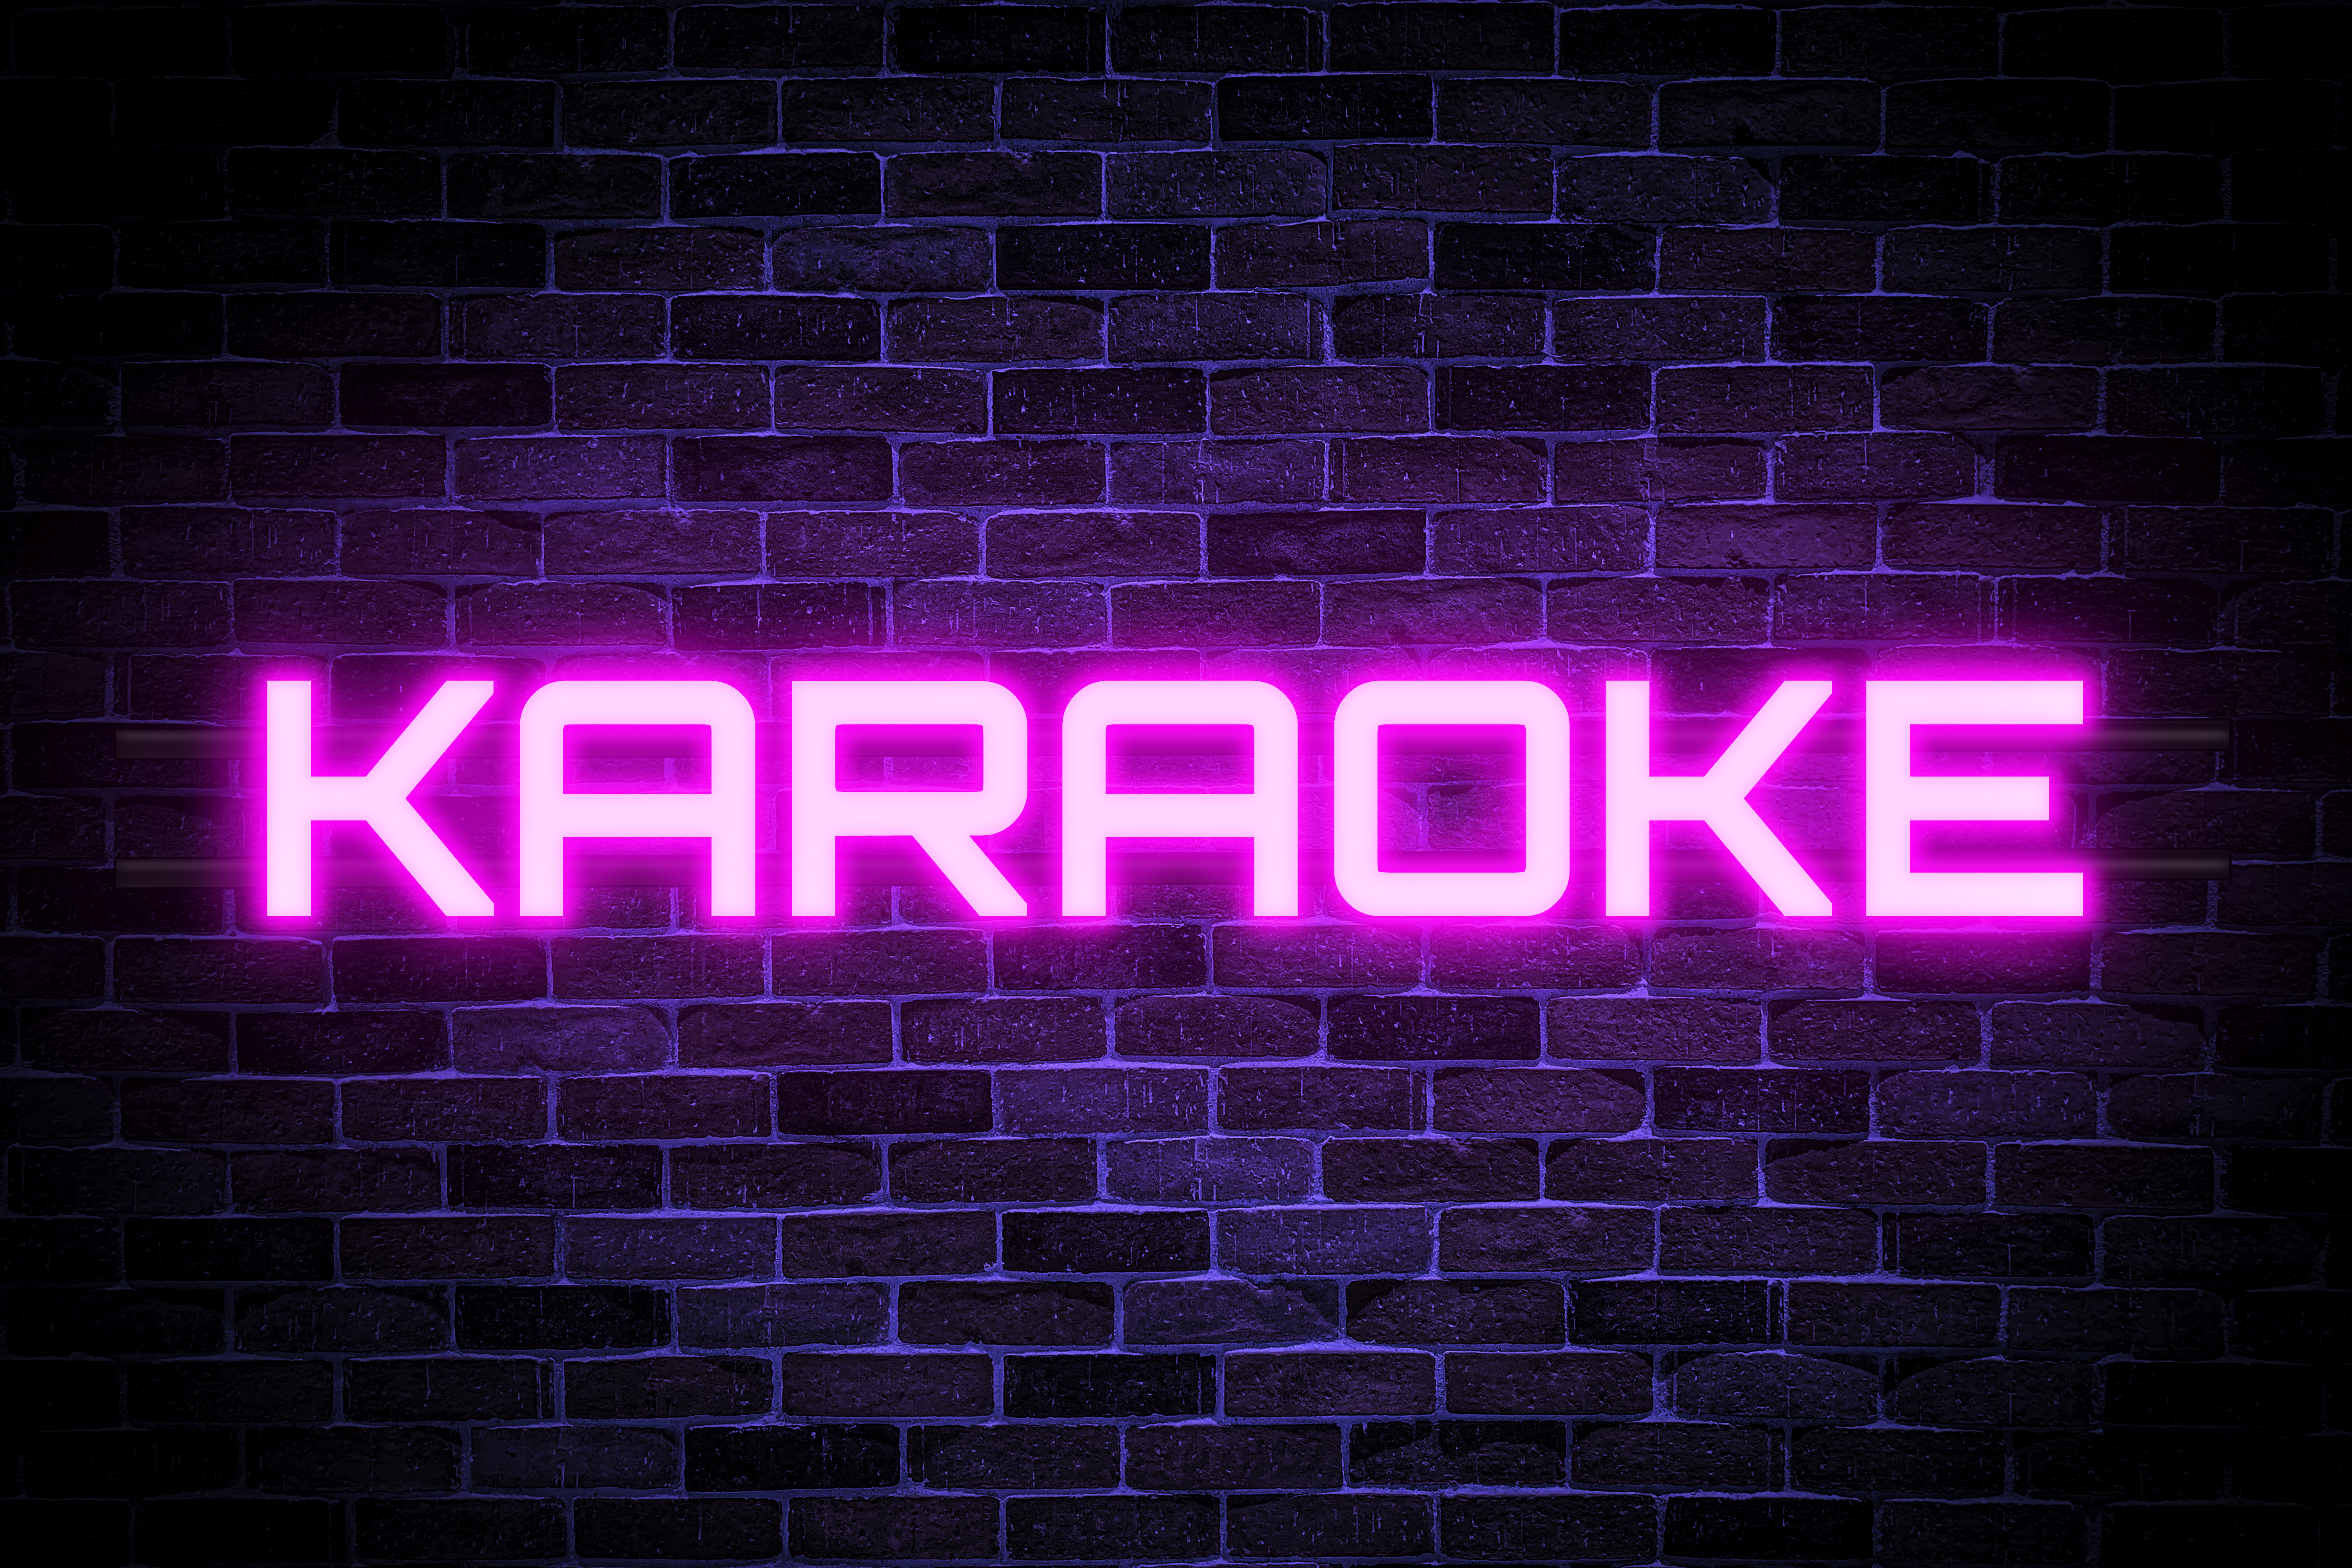 Karaoke Imágenes, Fotos y Fondos de pantalla para Descargar Gratis